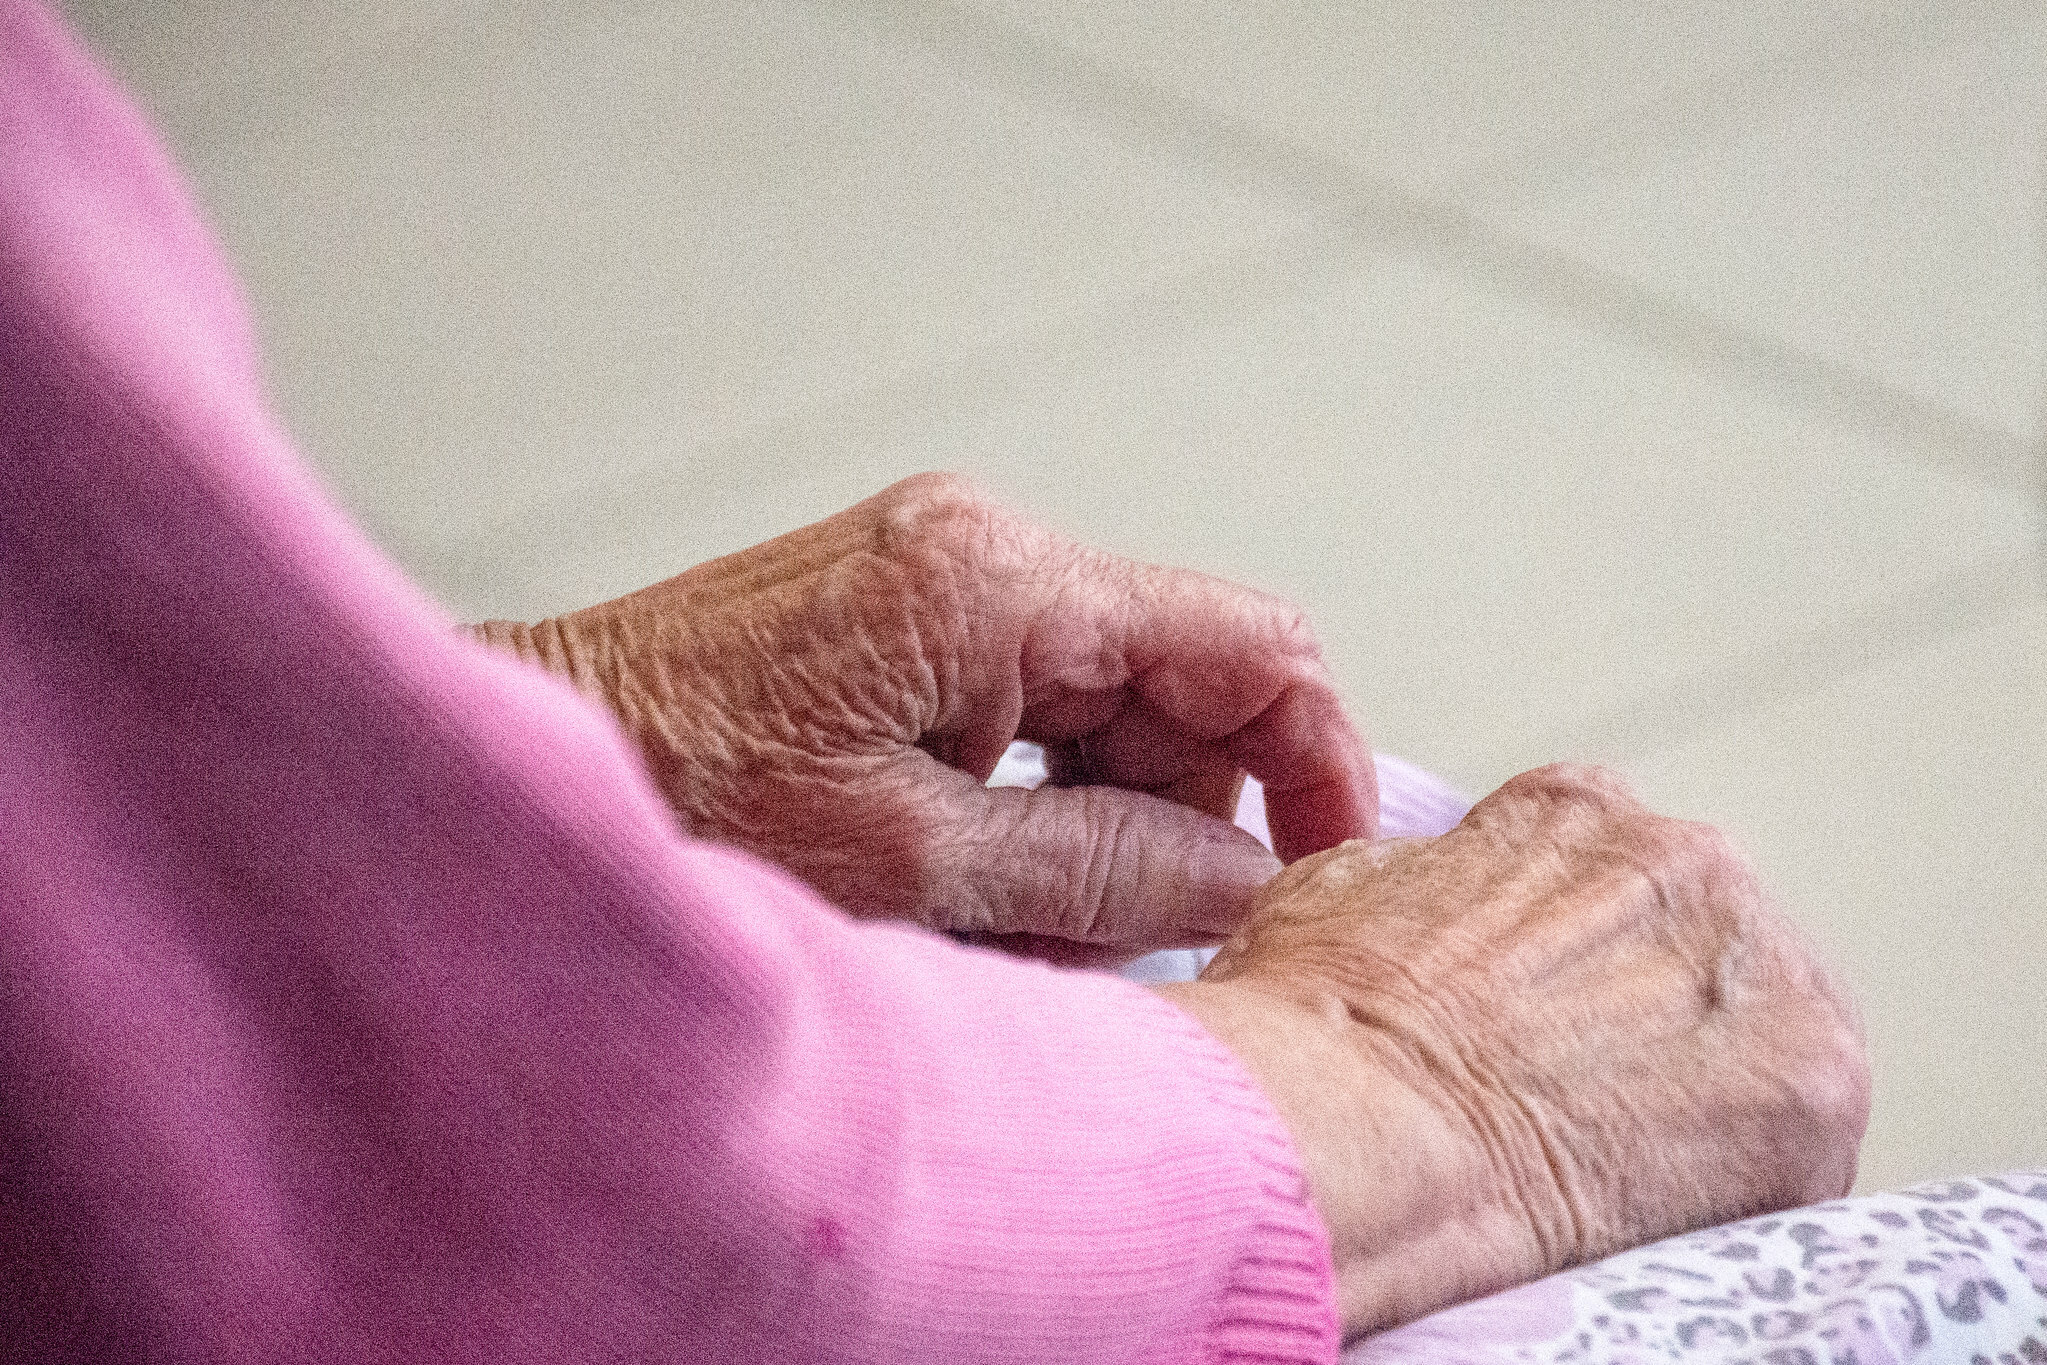 Тело 82-летней пенсионерки обнаружили во вскрытой квартире на Ставрополье